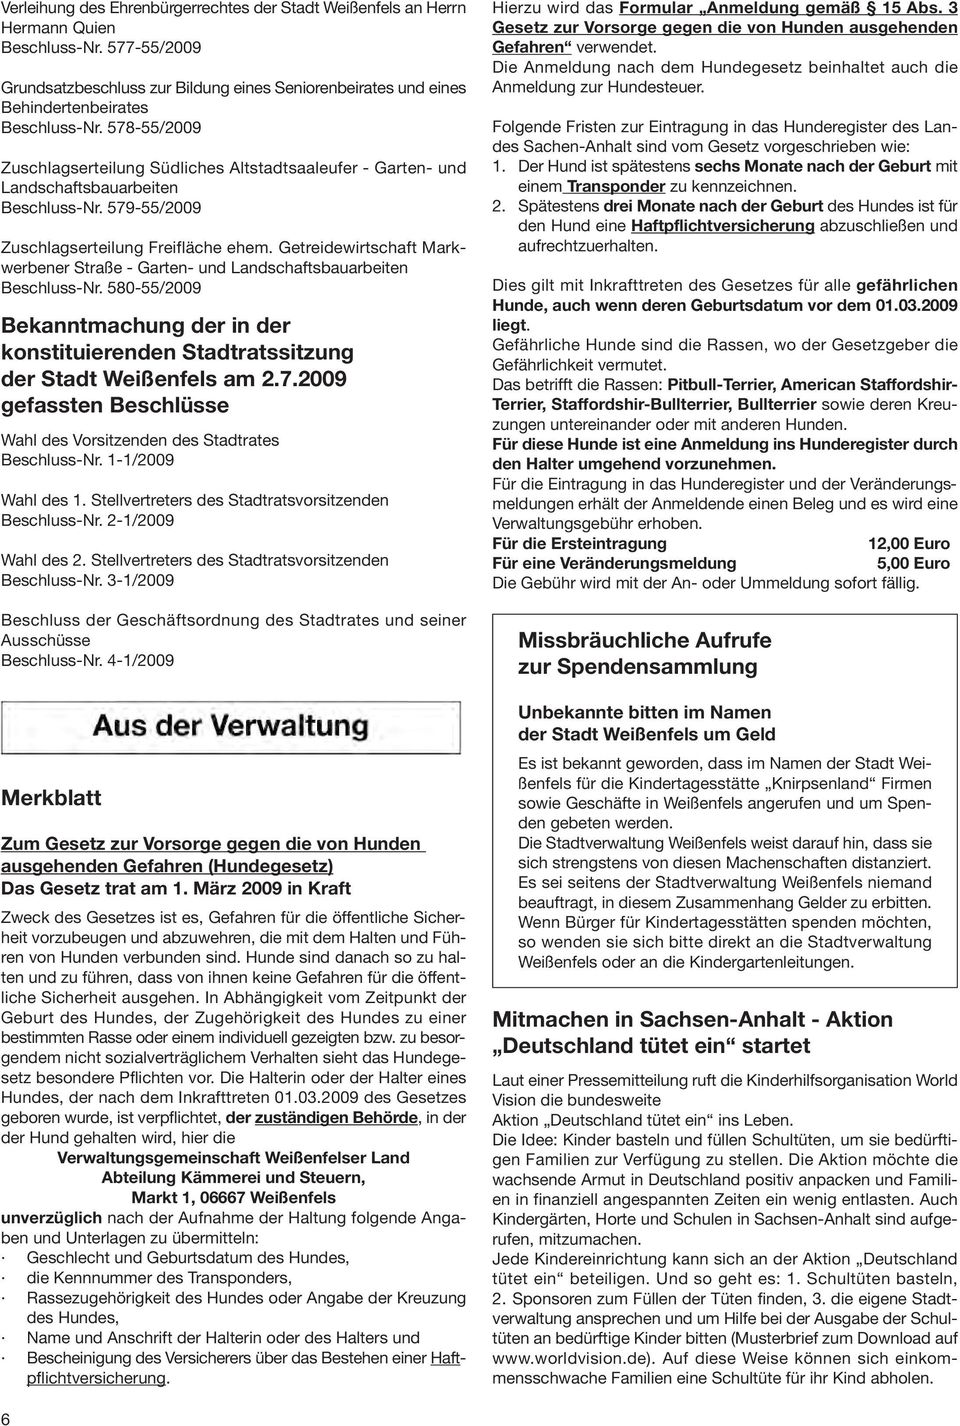 578-55/2009 Zuschlagserteilung Südliches Altstadtsaaleufer - Garten- und Landschaftsbauarbeiten Beschluss-Nr. 579-55/2009 Zuschlagserteilung Freifläche ehem.